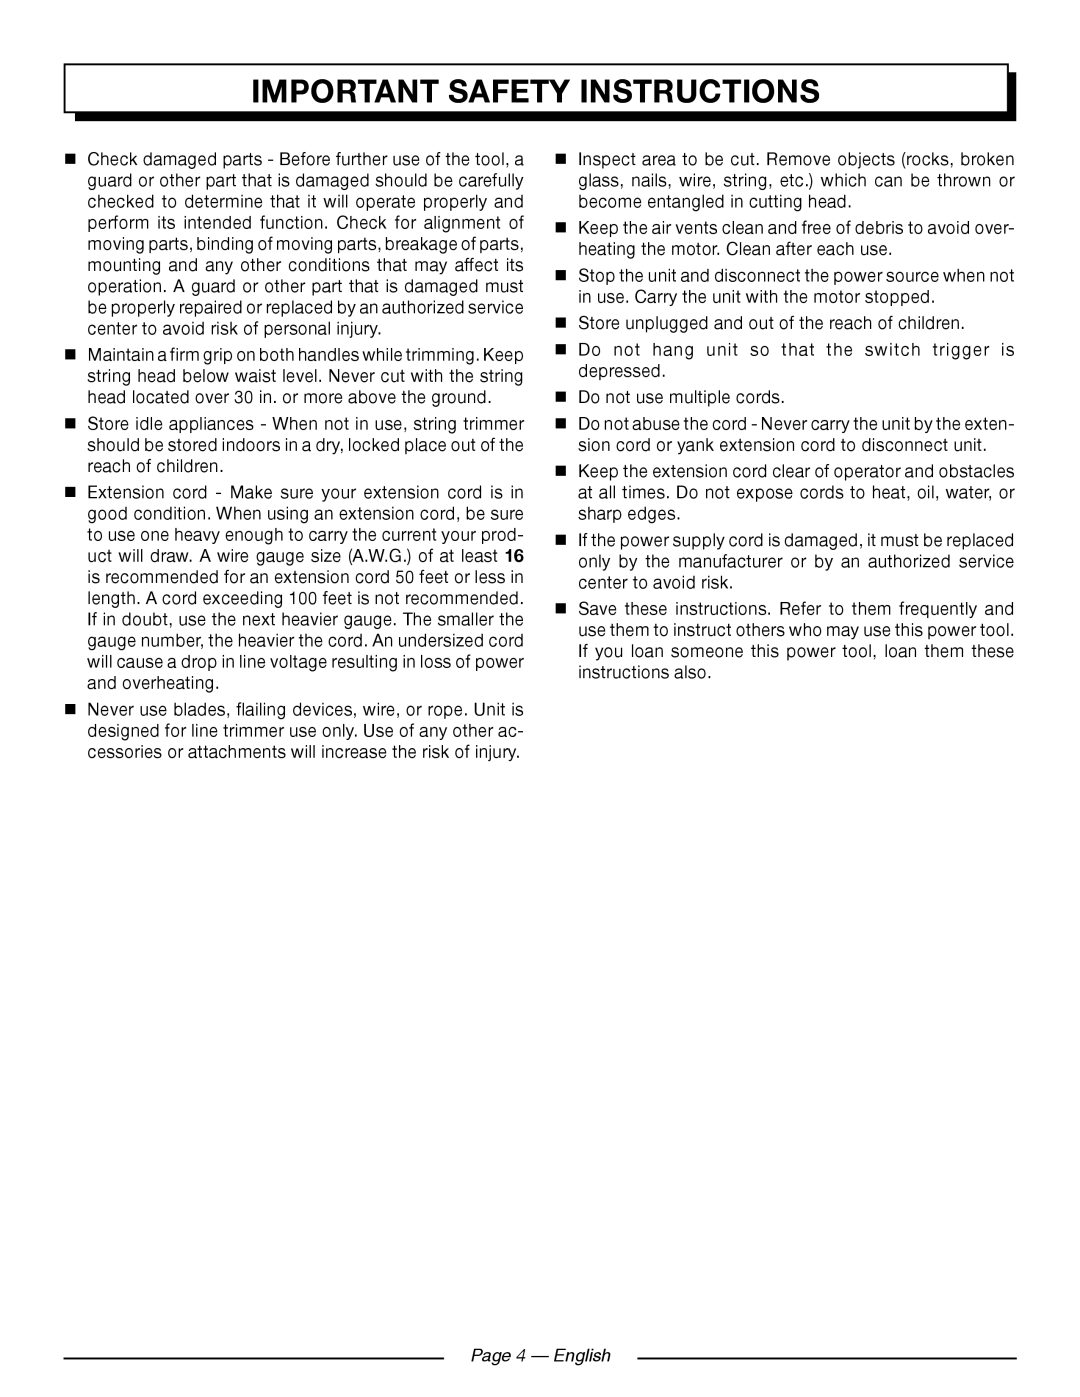 Homelite UT41121 manuel dutilisation Page 4 - English, Important Safety Instructions 